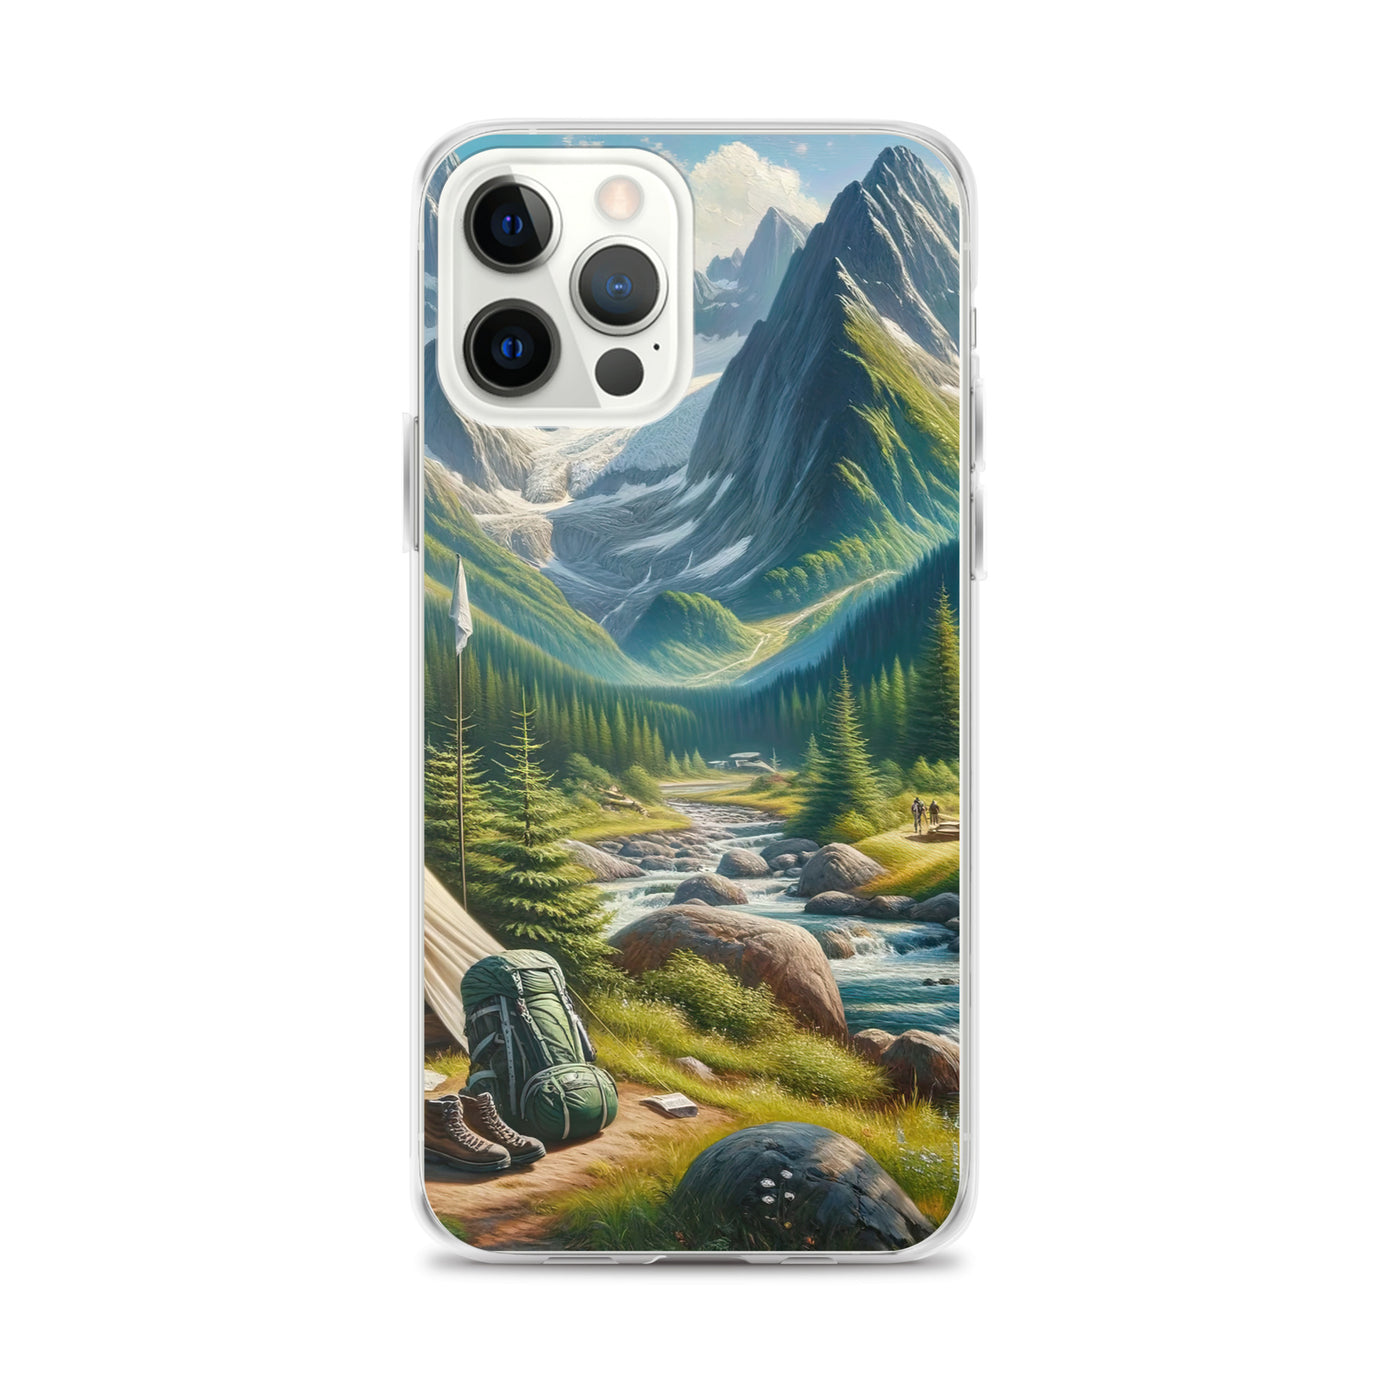 Ölgemälde der Alpensommerlandschaft mit Zelt, Gipfeln, Wäldern und Bächen - iPhone Schutzhülle (durchsichtig) camping xxx yyy zzz iPhone 12 Pro Max